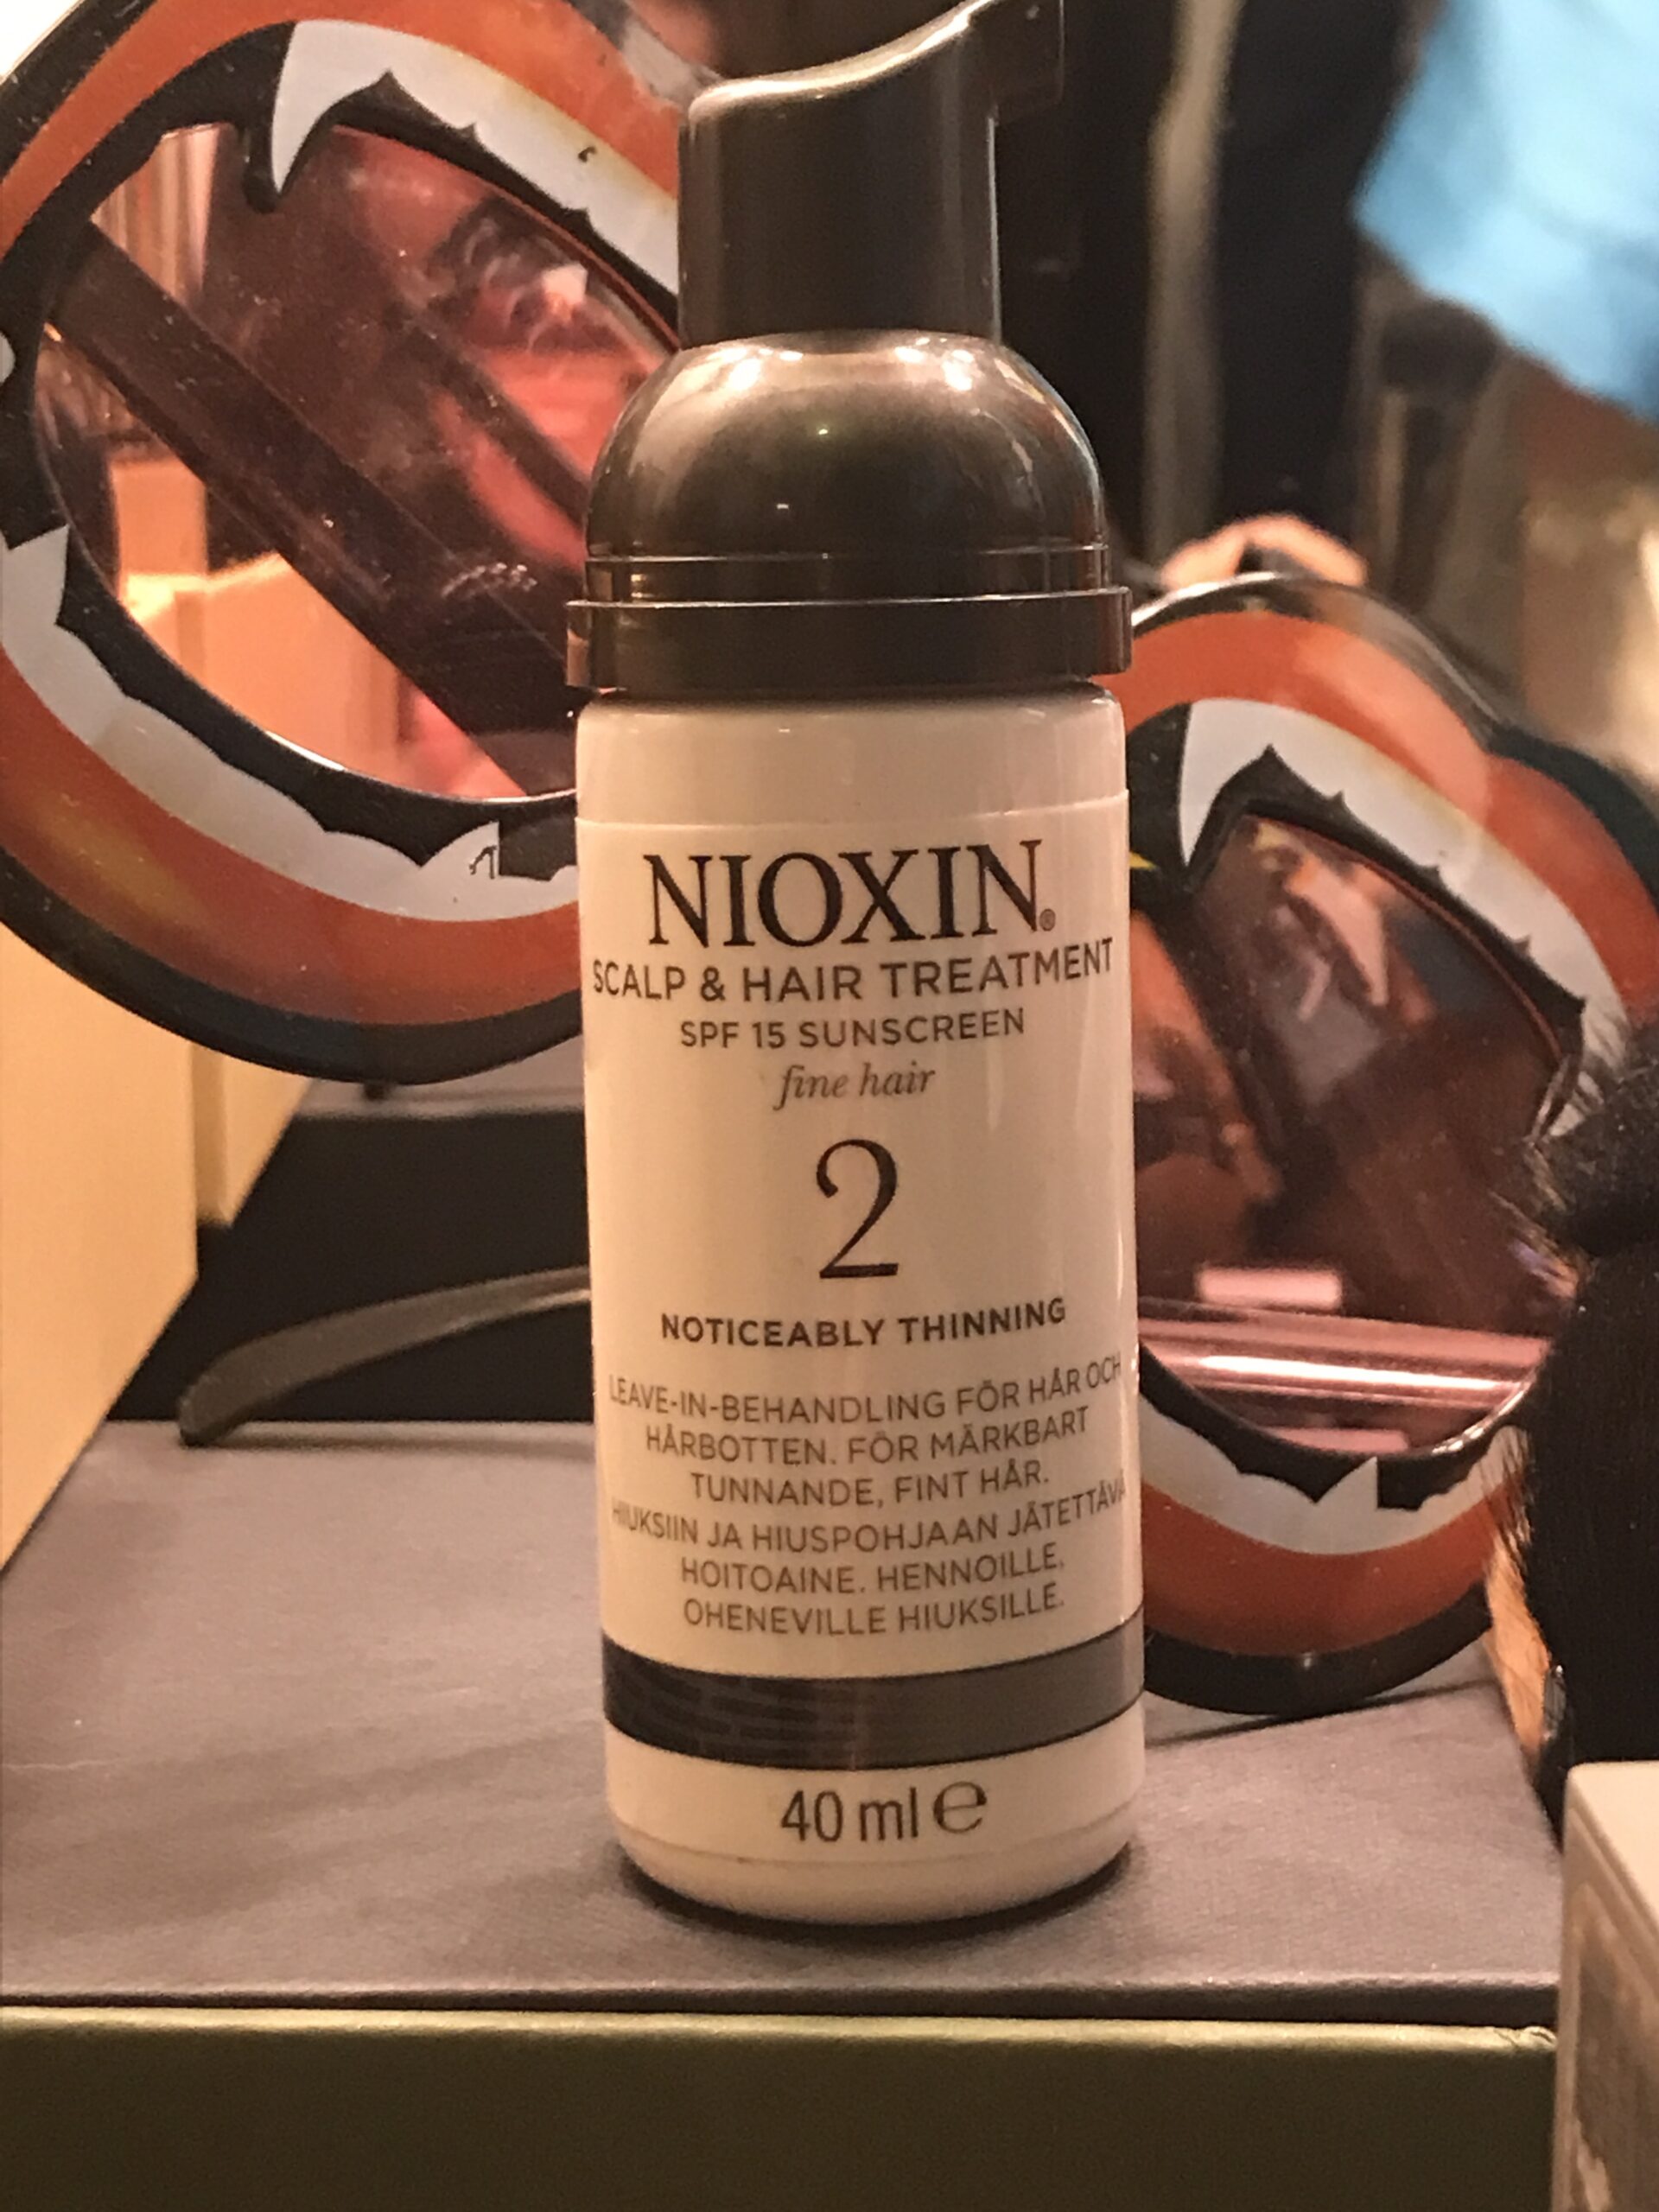 Nioxin scalp & hair treatment spf 15